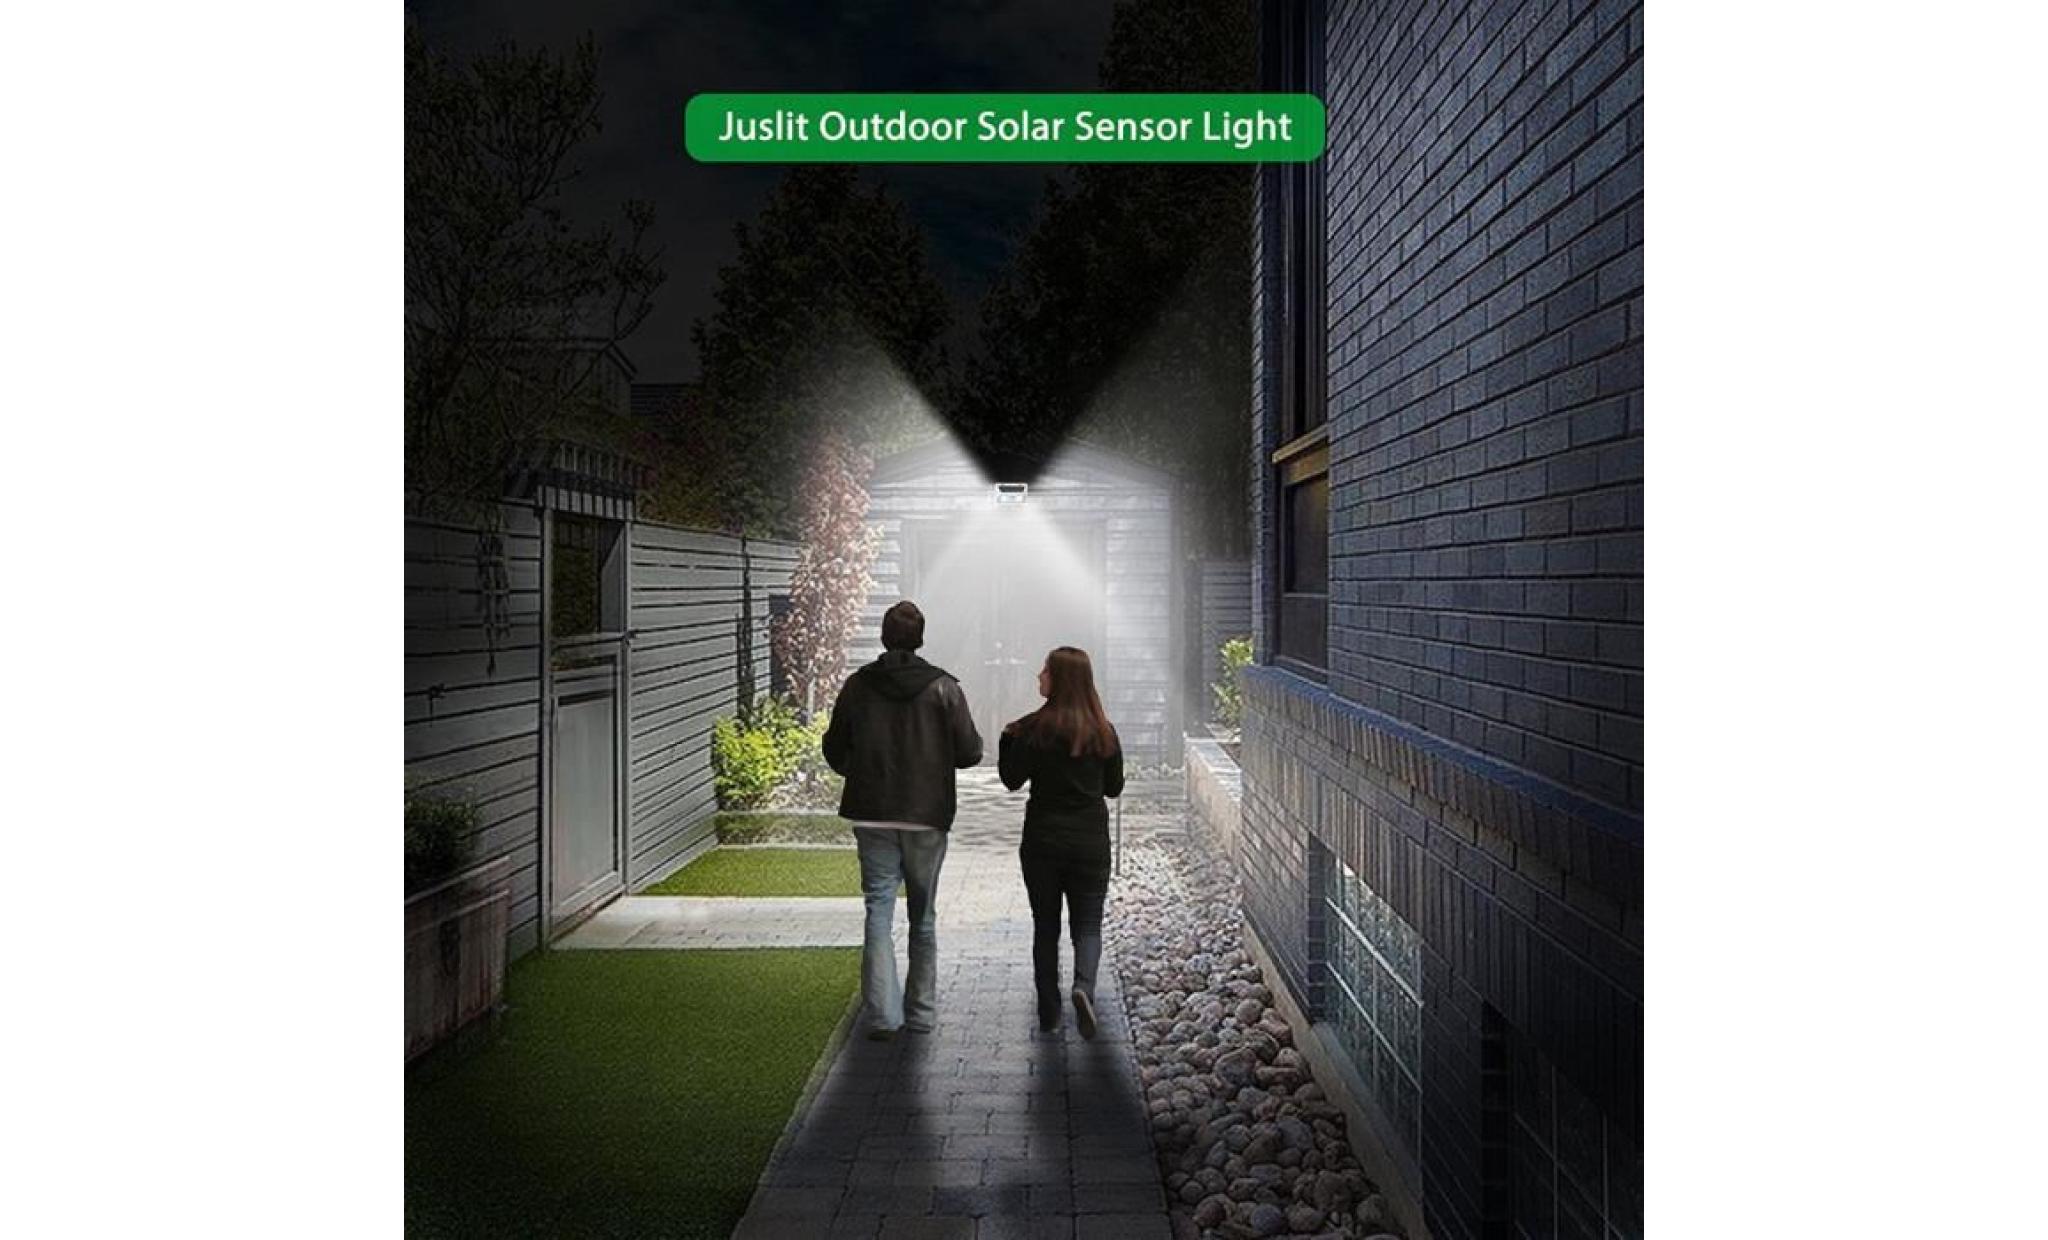 borne solaire 95 smd cob lumière solaire pir motion sensor lampe de jardin de rue extérieure #si 342 pas cher